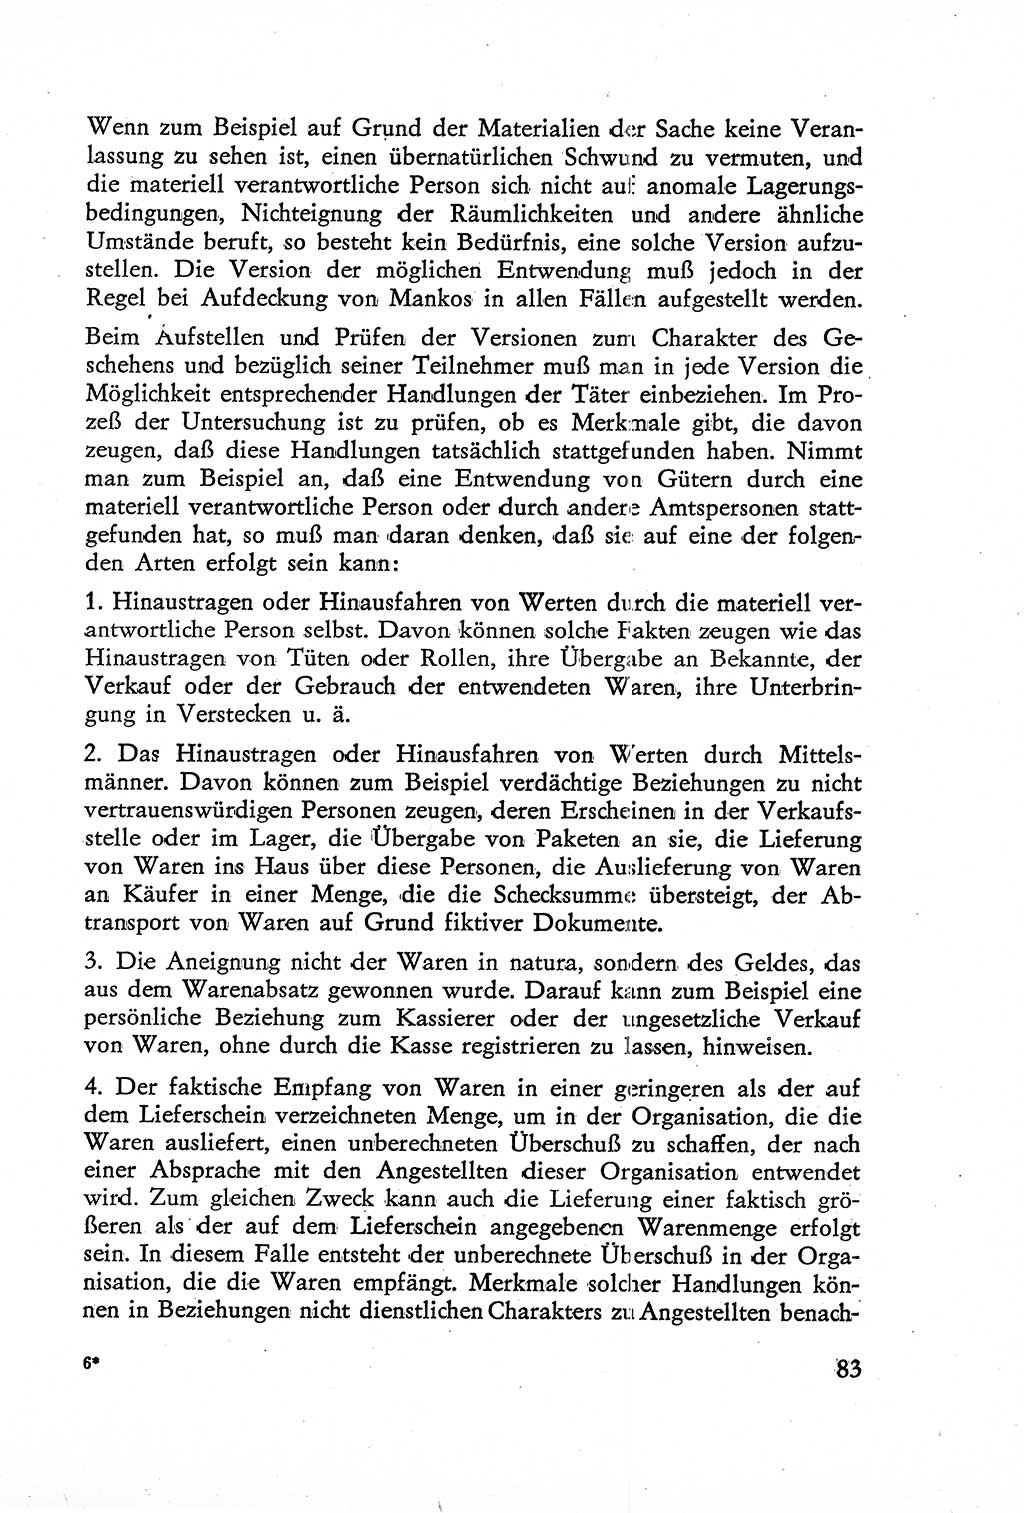 Die Untersuchung einzelner Verbrechensarten [Deutsche Demokratische Republik (DDR)] 1960, Seite 83 (Unters. Verbr.-Art. DDR 1960, S. 83)